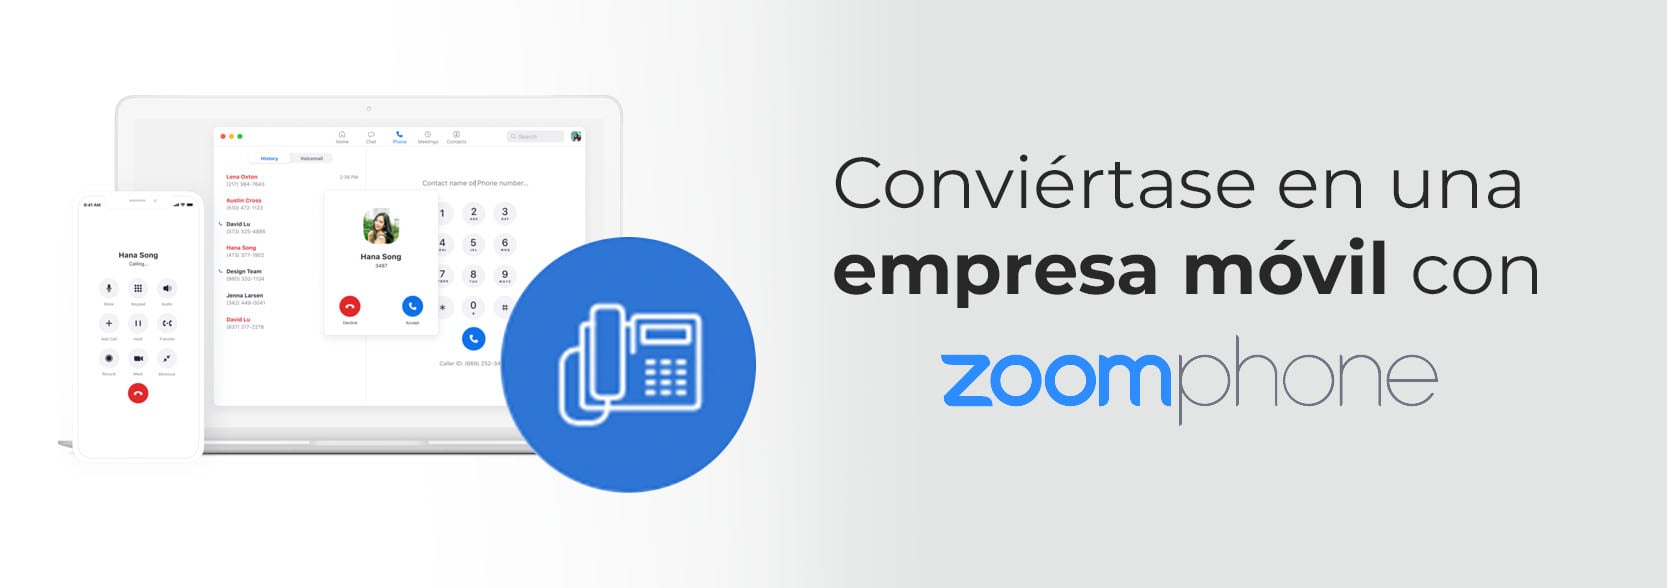 Conviertase-en-una-empresa-movil-con-zoom-phone